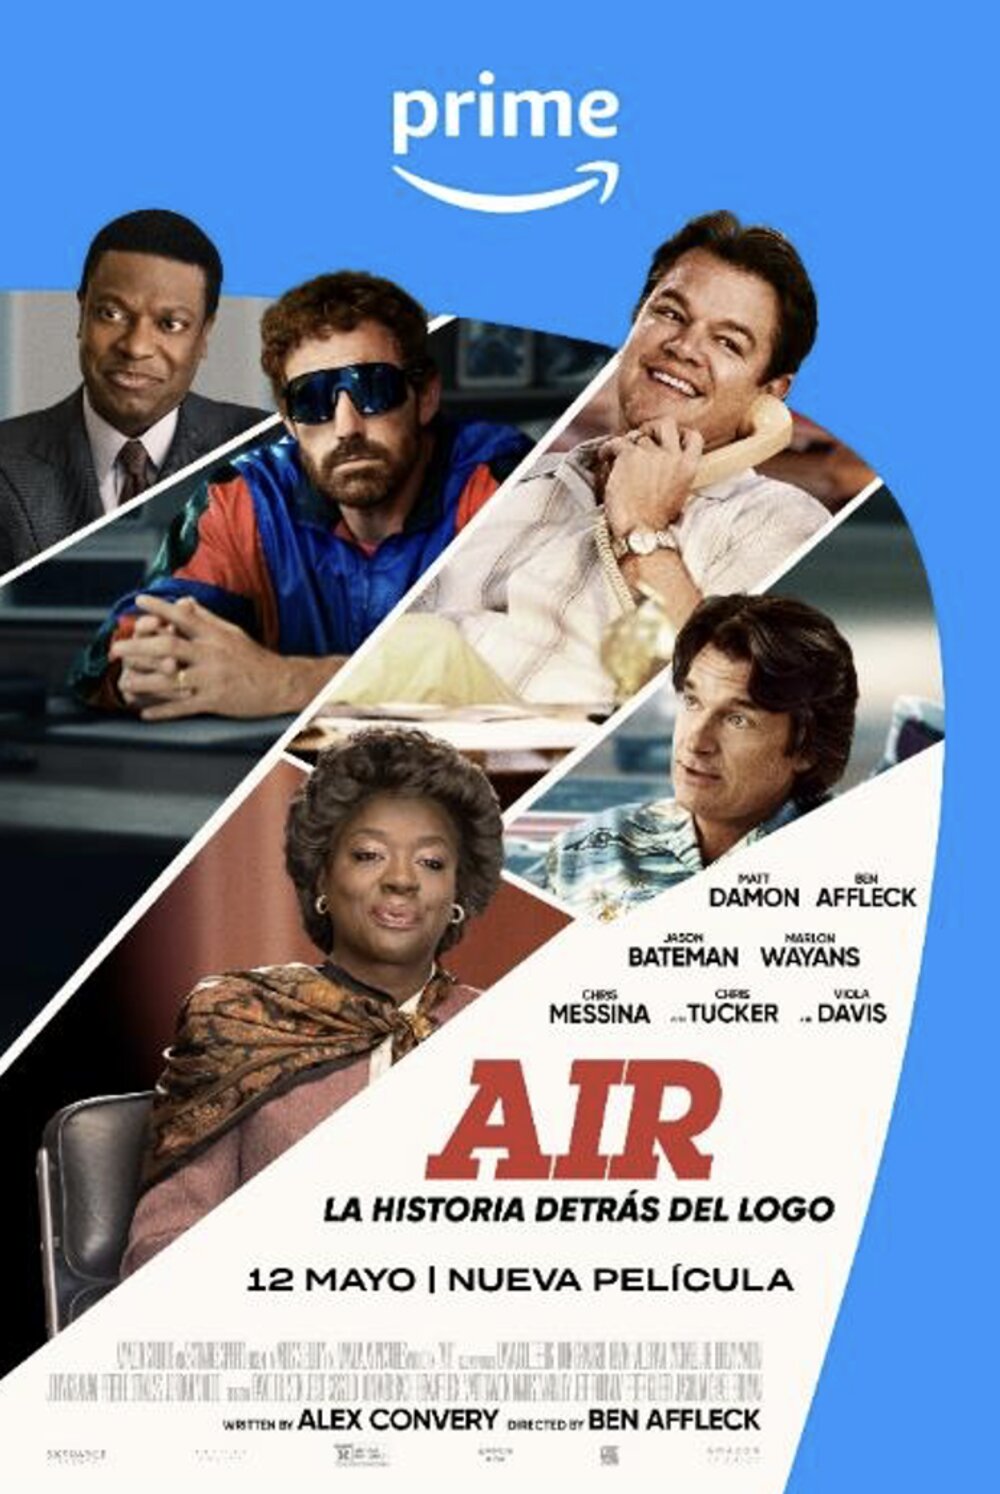 ‘AIR’, de Ben Affleck, estará disponible en Prime Video desde el 12 de mayo